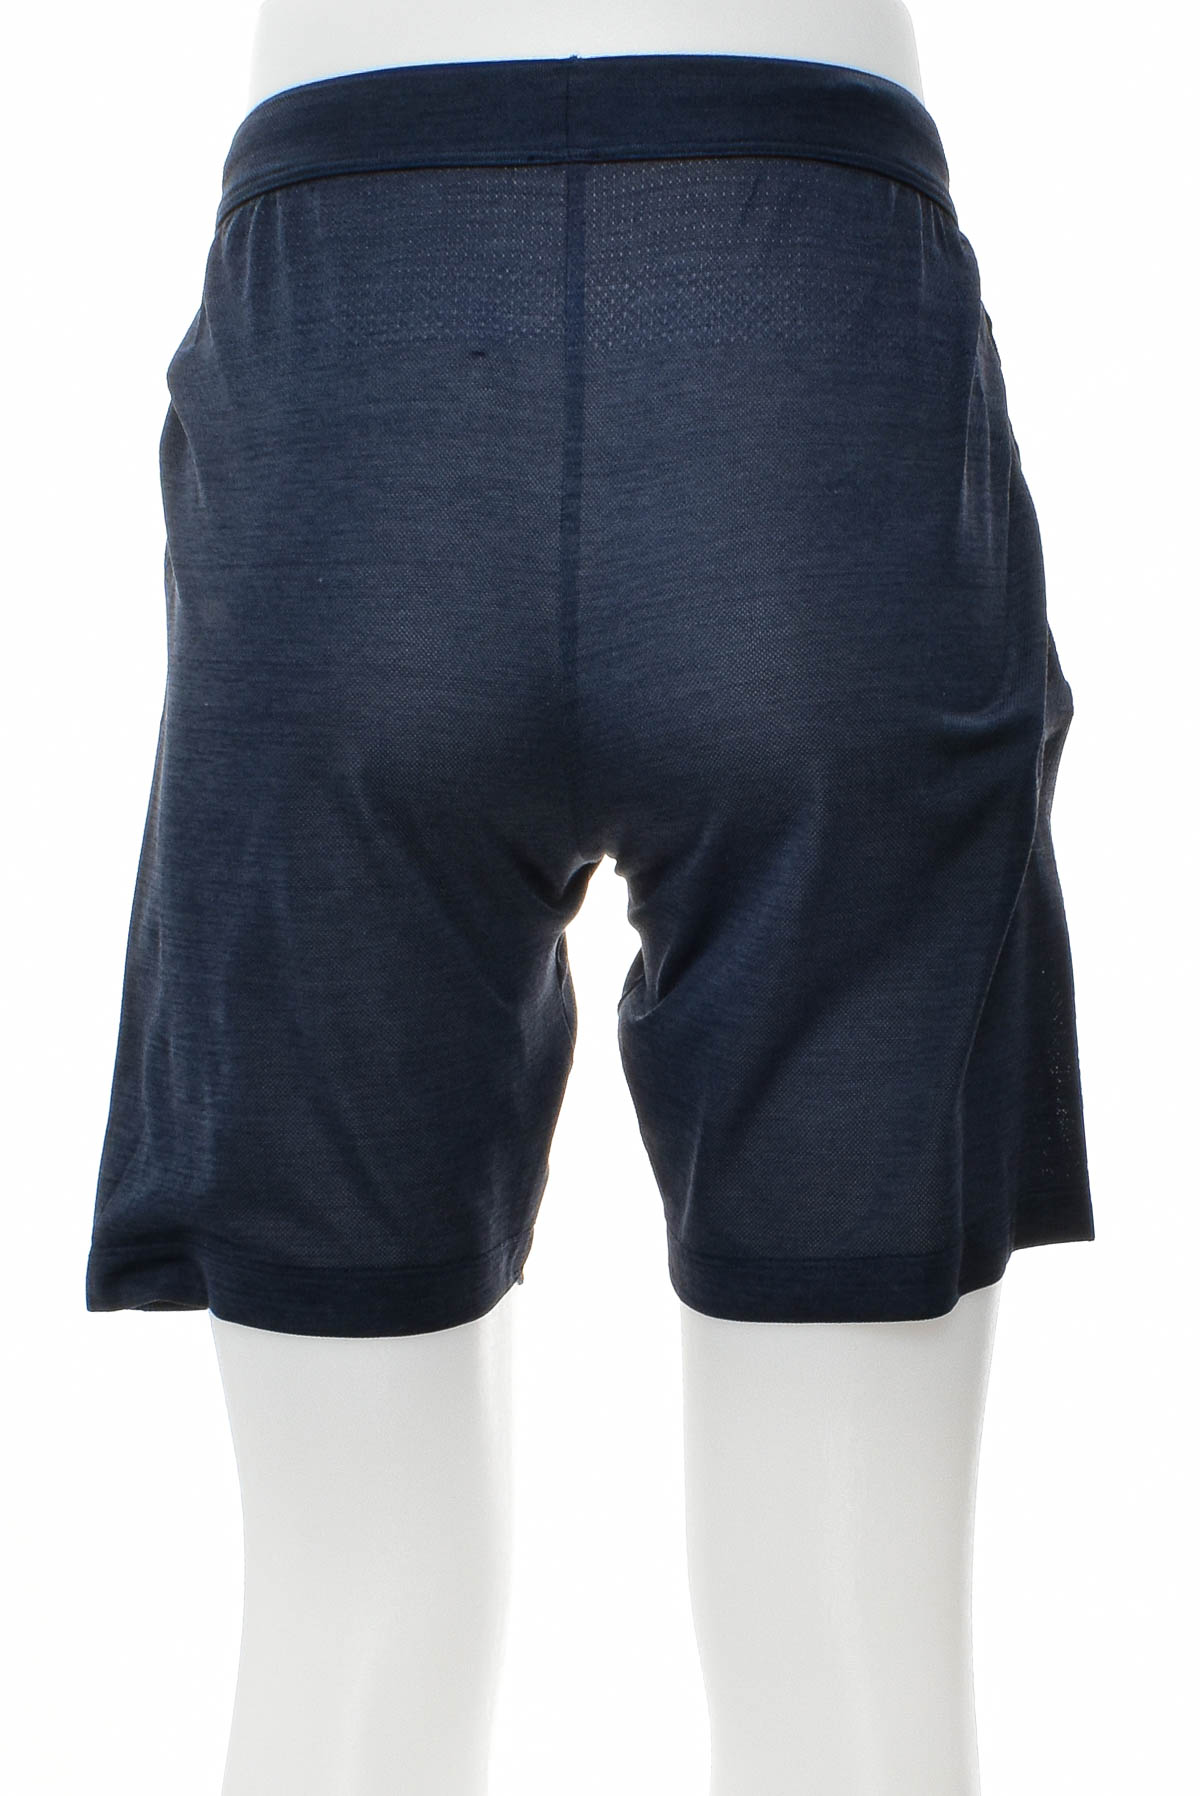 Pantaloni scurți bărbați - UNIQLO - 1